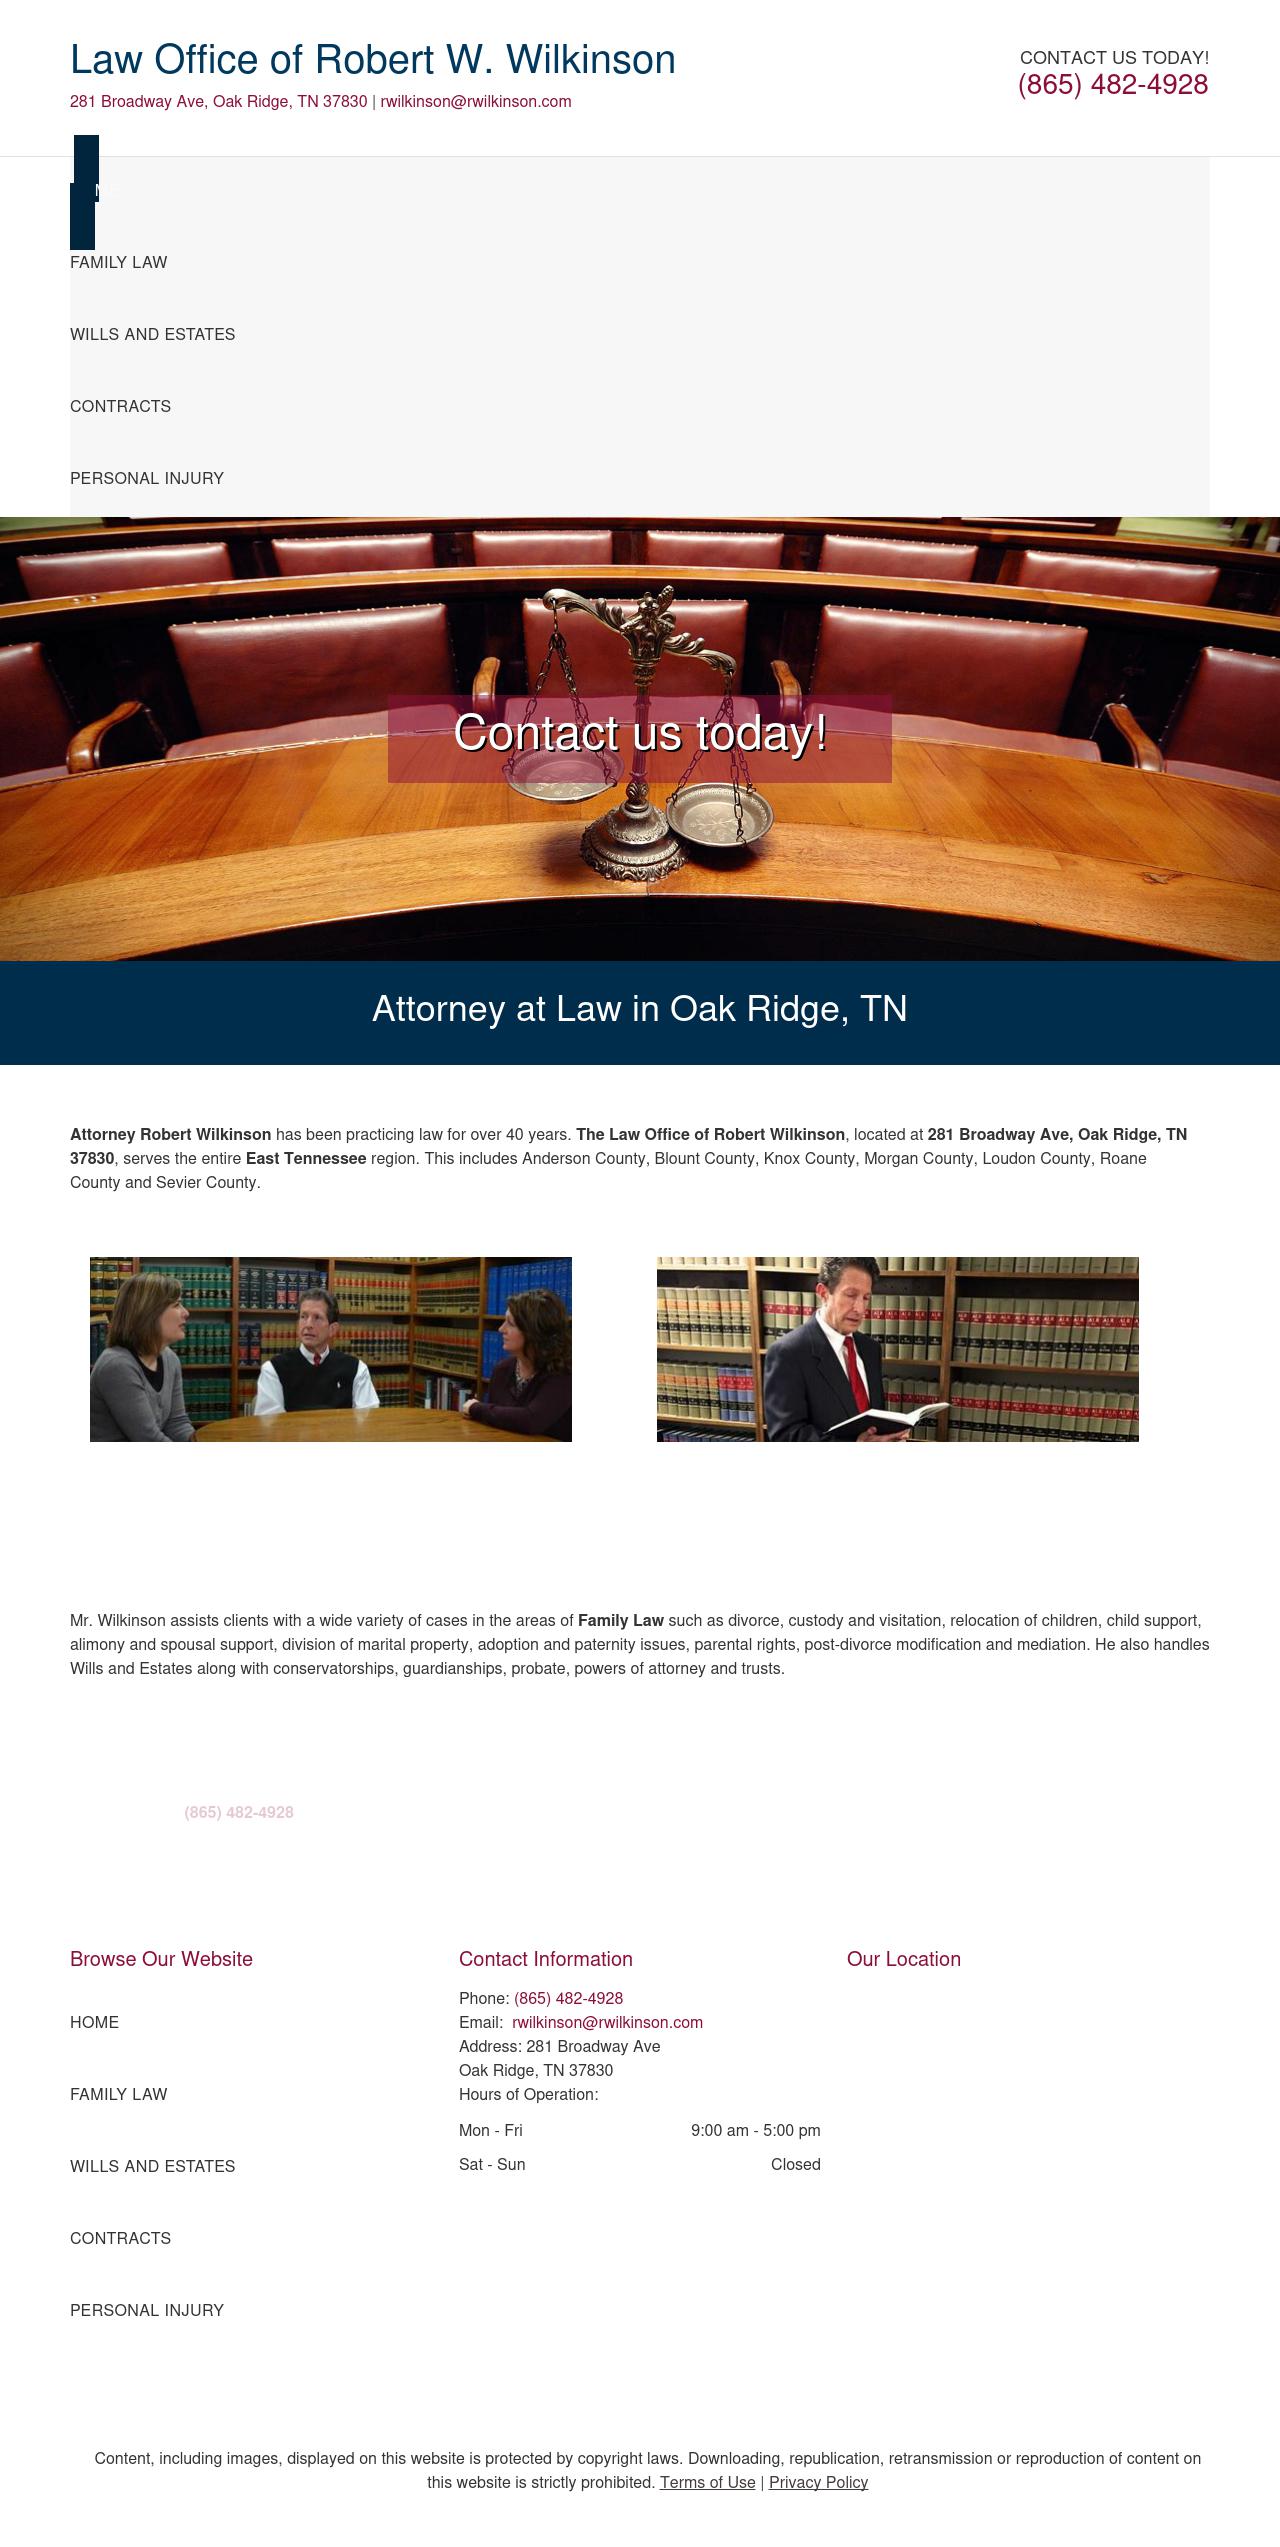 Wilkinson, Robert W - Oak Ridge TN Lawyers